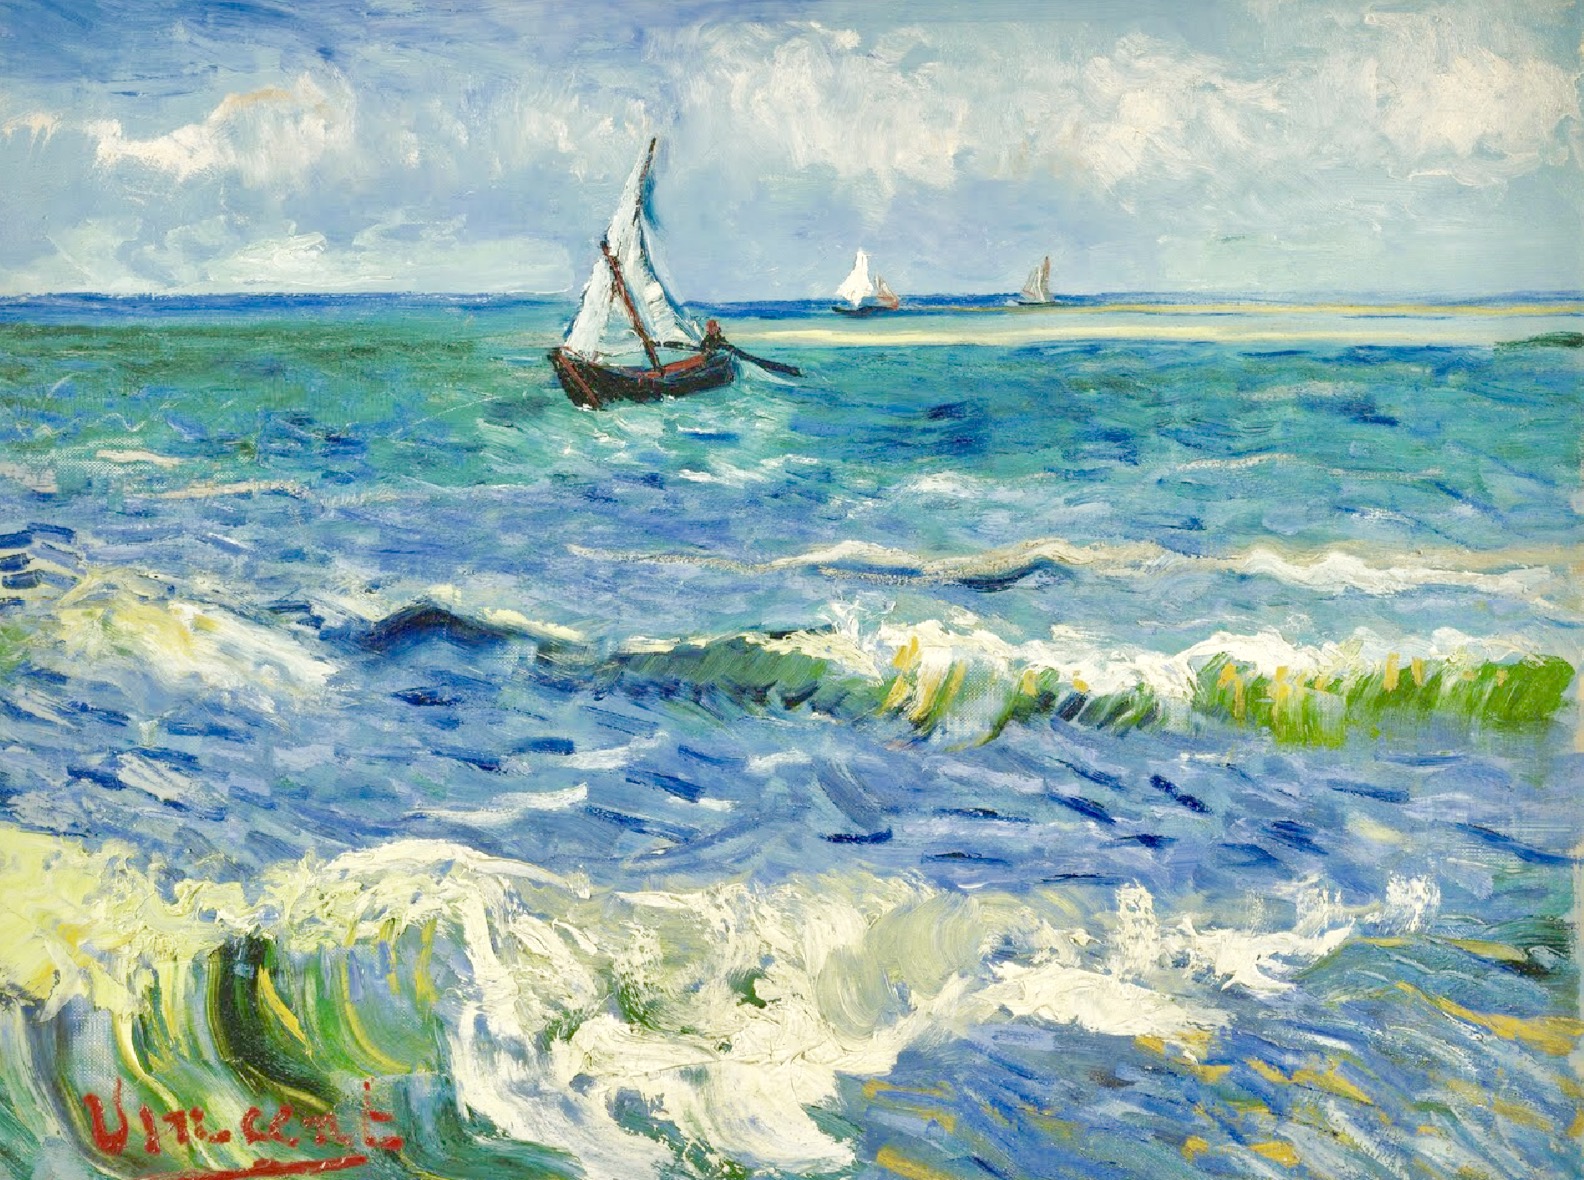 Poder del Arte: Paisaje marino de Les Saintes-Maries-de-la-Mer", de van Gogh